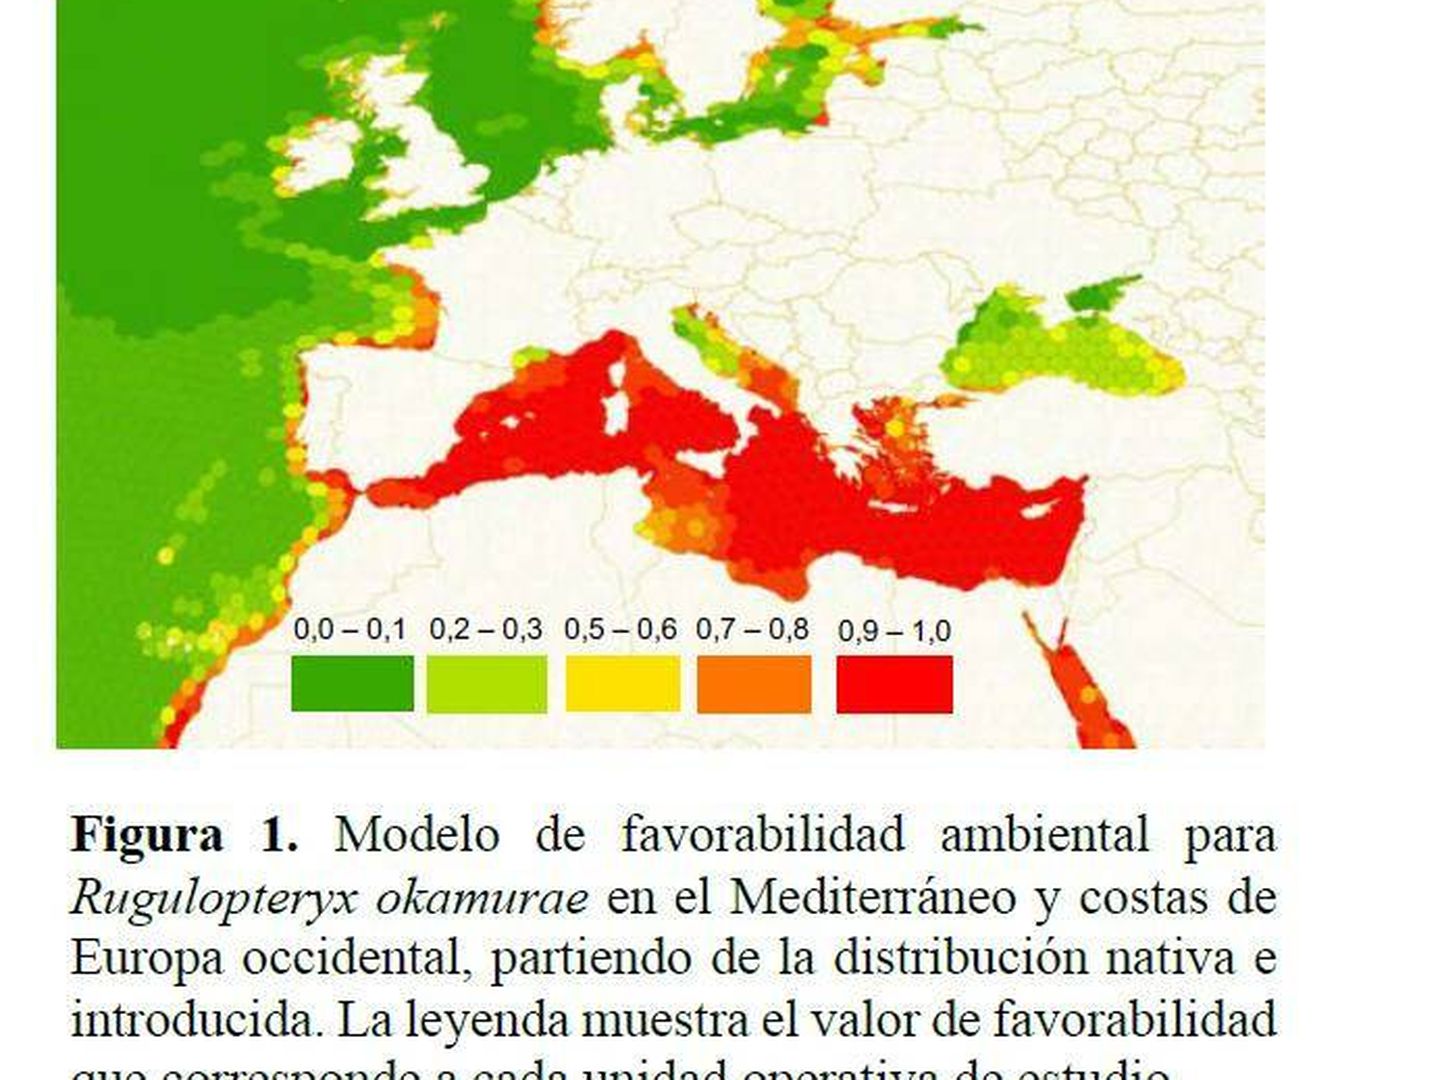 Los estudios de riesgo establecen que la especie puede extenderse por todo el Mediterráneo y parte de la Costa Atlántica. (Investigación de Román Muñoz)